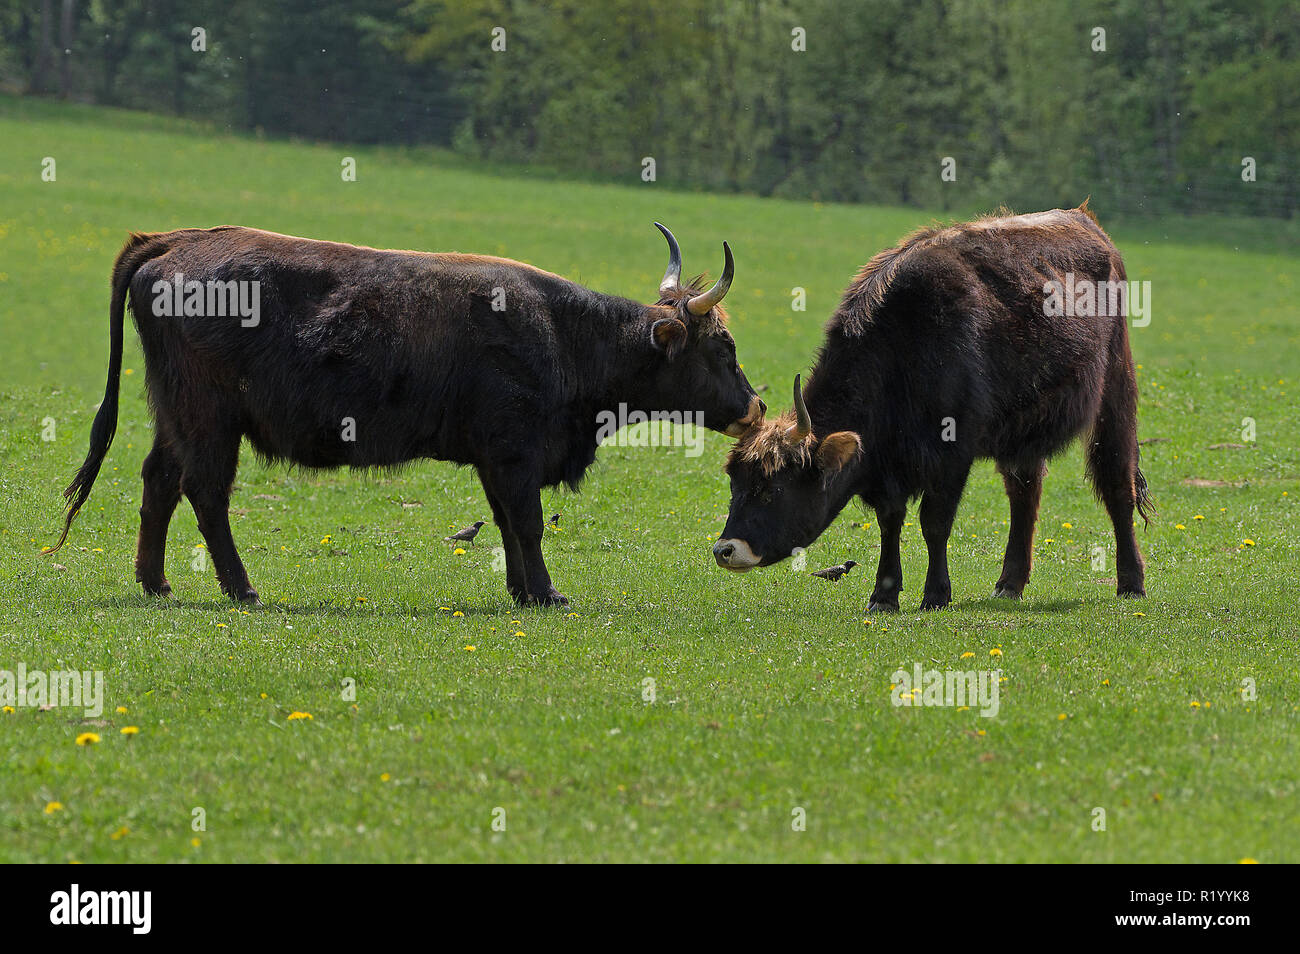 L'Aurochs de Heck, recréé les bovins (Bos primigenius primigenius). Deux vaches dans un pré, un toilettage de l'autre. Allemagne Banque D'Images